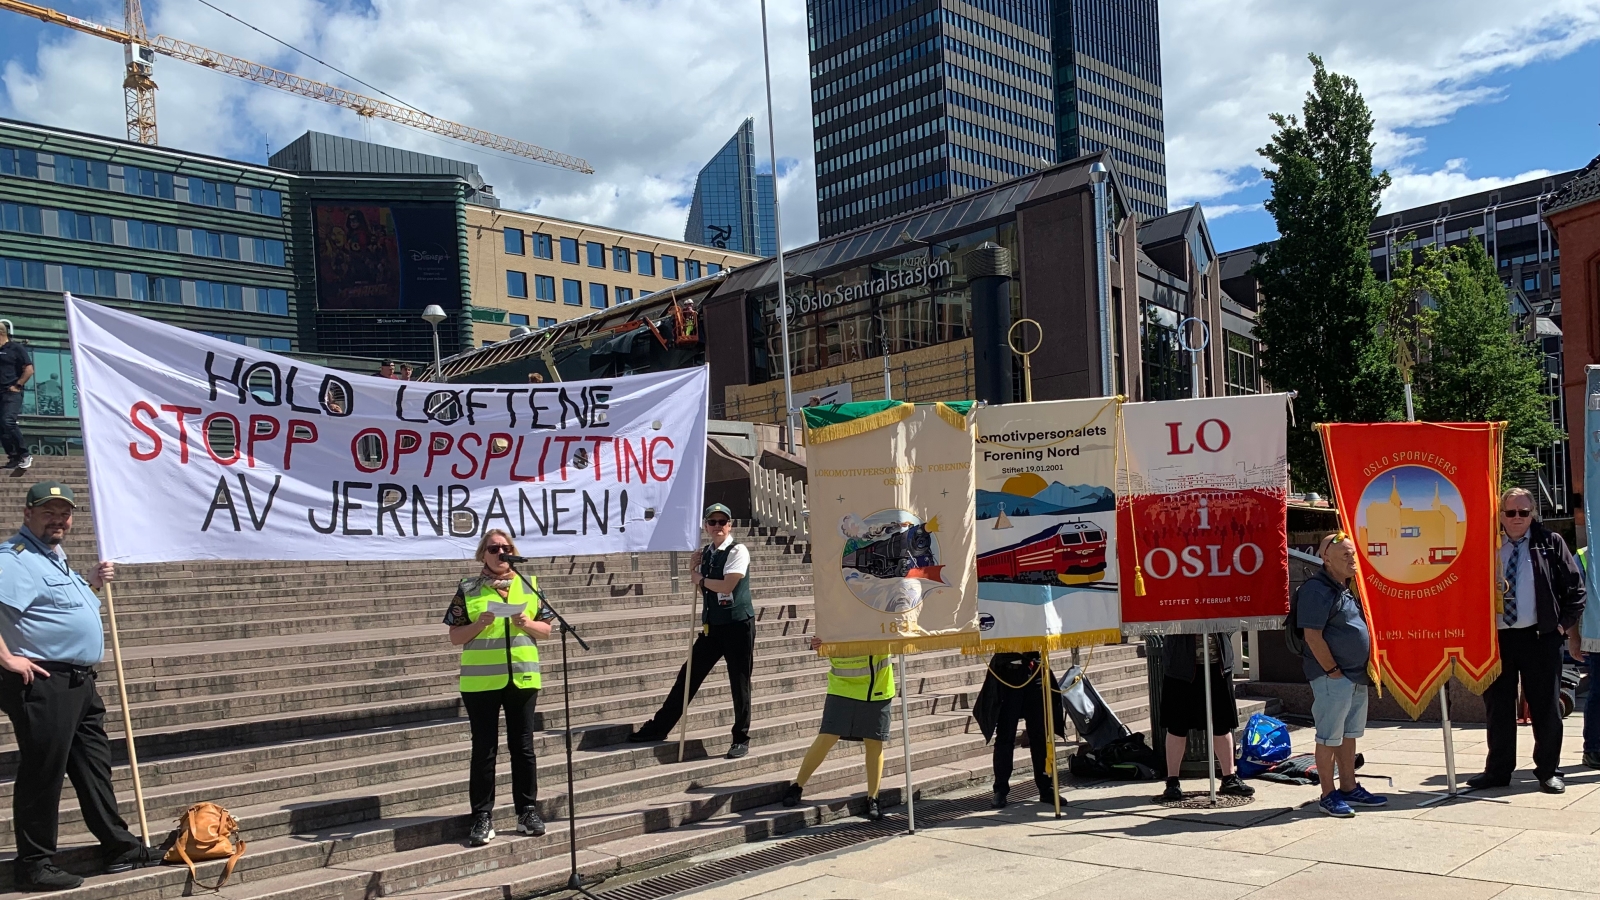 Politisk streik mot oppsplitting av jernbanen 14. juni 2022. Jernbanetorget, Oslo. Ingunn Gjerstad, leder av LO i Oslo, holder appell. Foto: JRS | Nei til EU